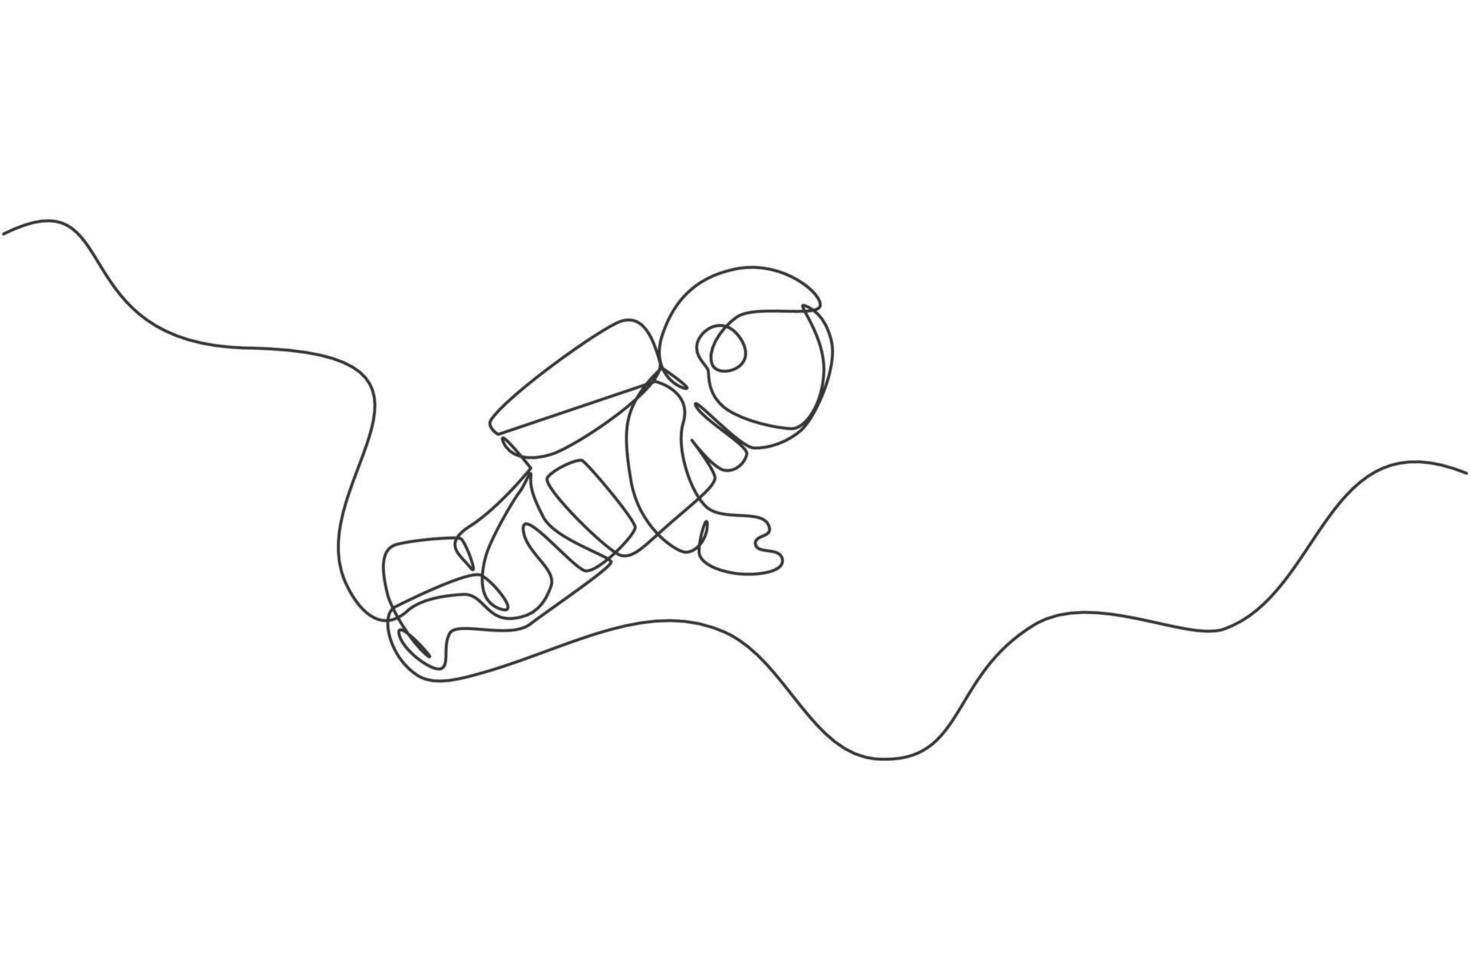 één enkele lijntekening van jonge astronaut in ruimtepak die bij kosmische ruimte vectorillustratie vliegen. ruimtevaarder avontuur galactische ruimte concept. moderne ononderbroken lijntekening ontwerp grafisch vector